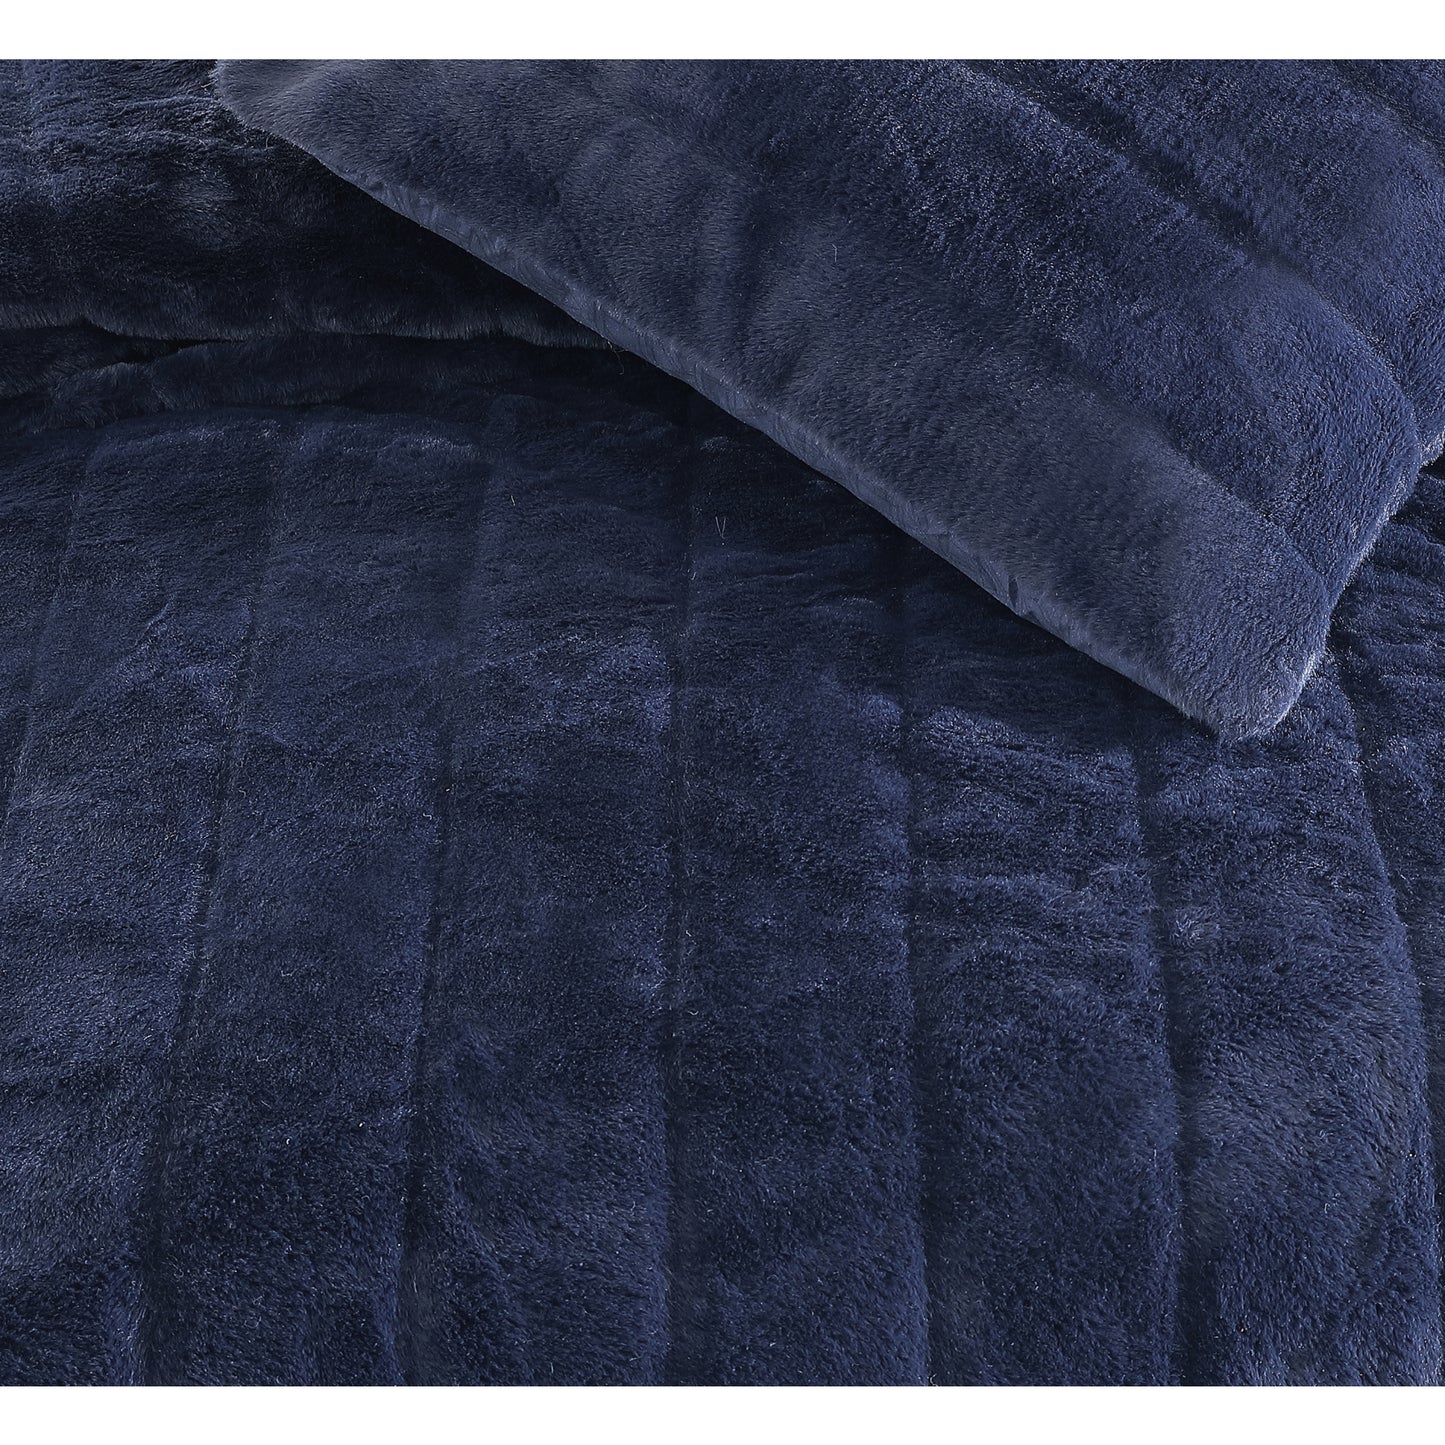 KARL LAGERFELD PARIS Channel Bunny Faux Fur Decorative Pillow